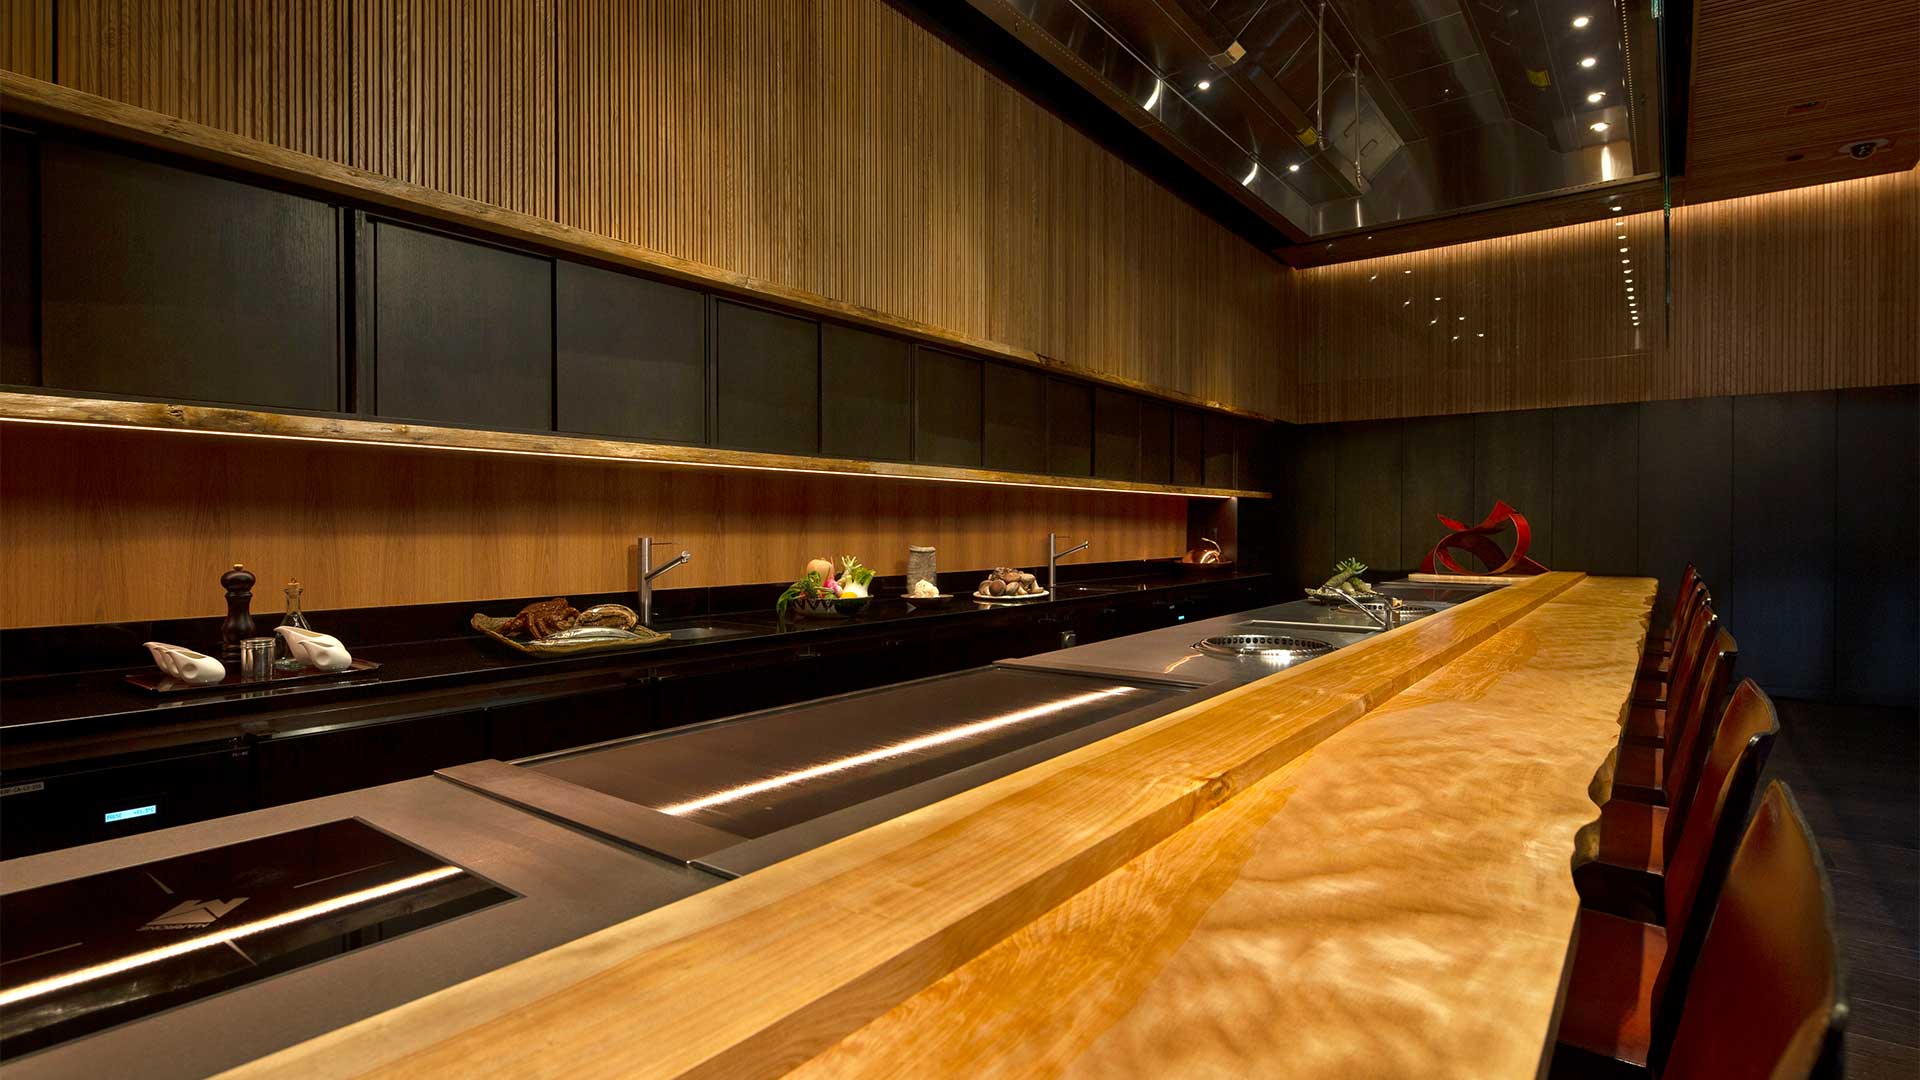 프라이빗 이벤트를 개최할 수 있는 프라이빗 룸이 갖춰진 레스토랑 Waku Ghin의 Chef's Table(셰프 테이블) 다이닝